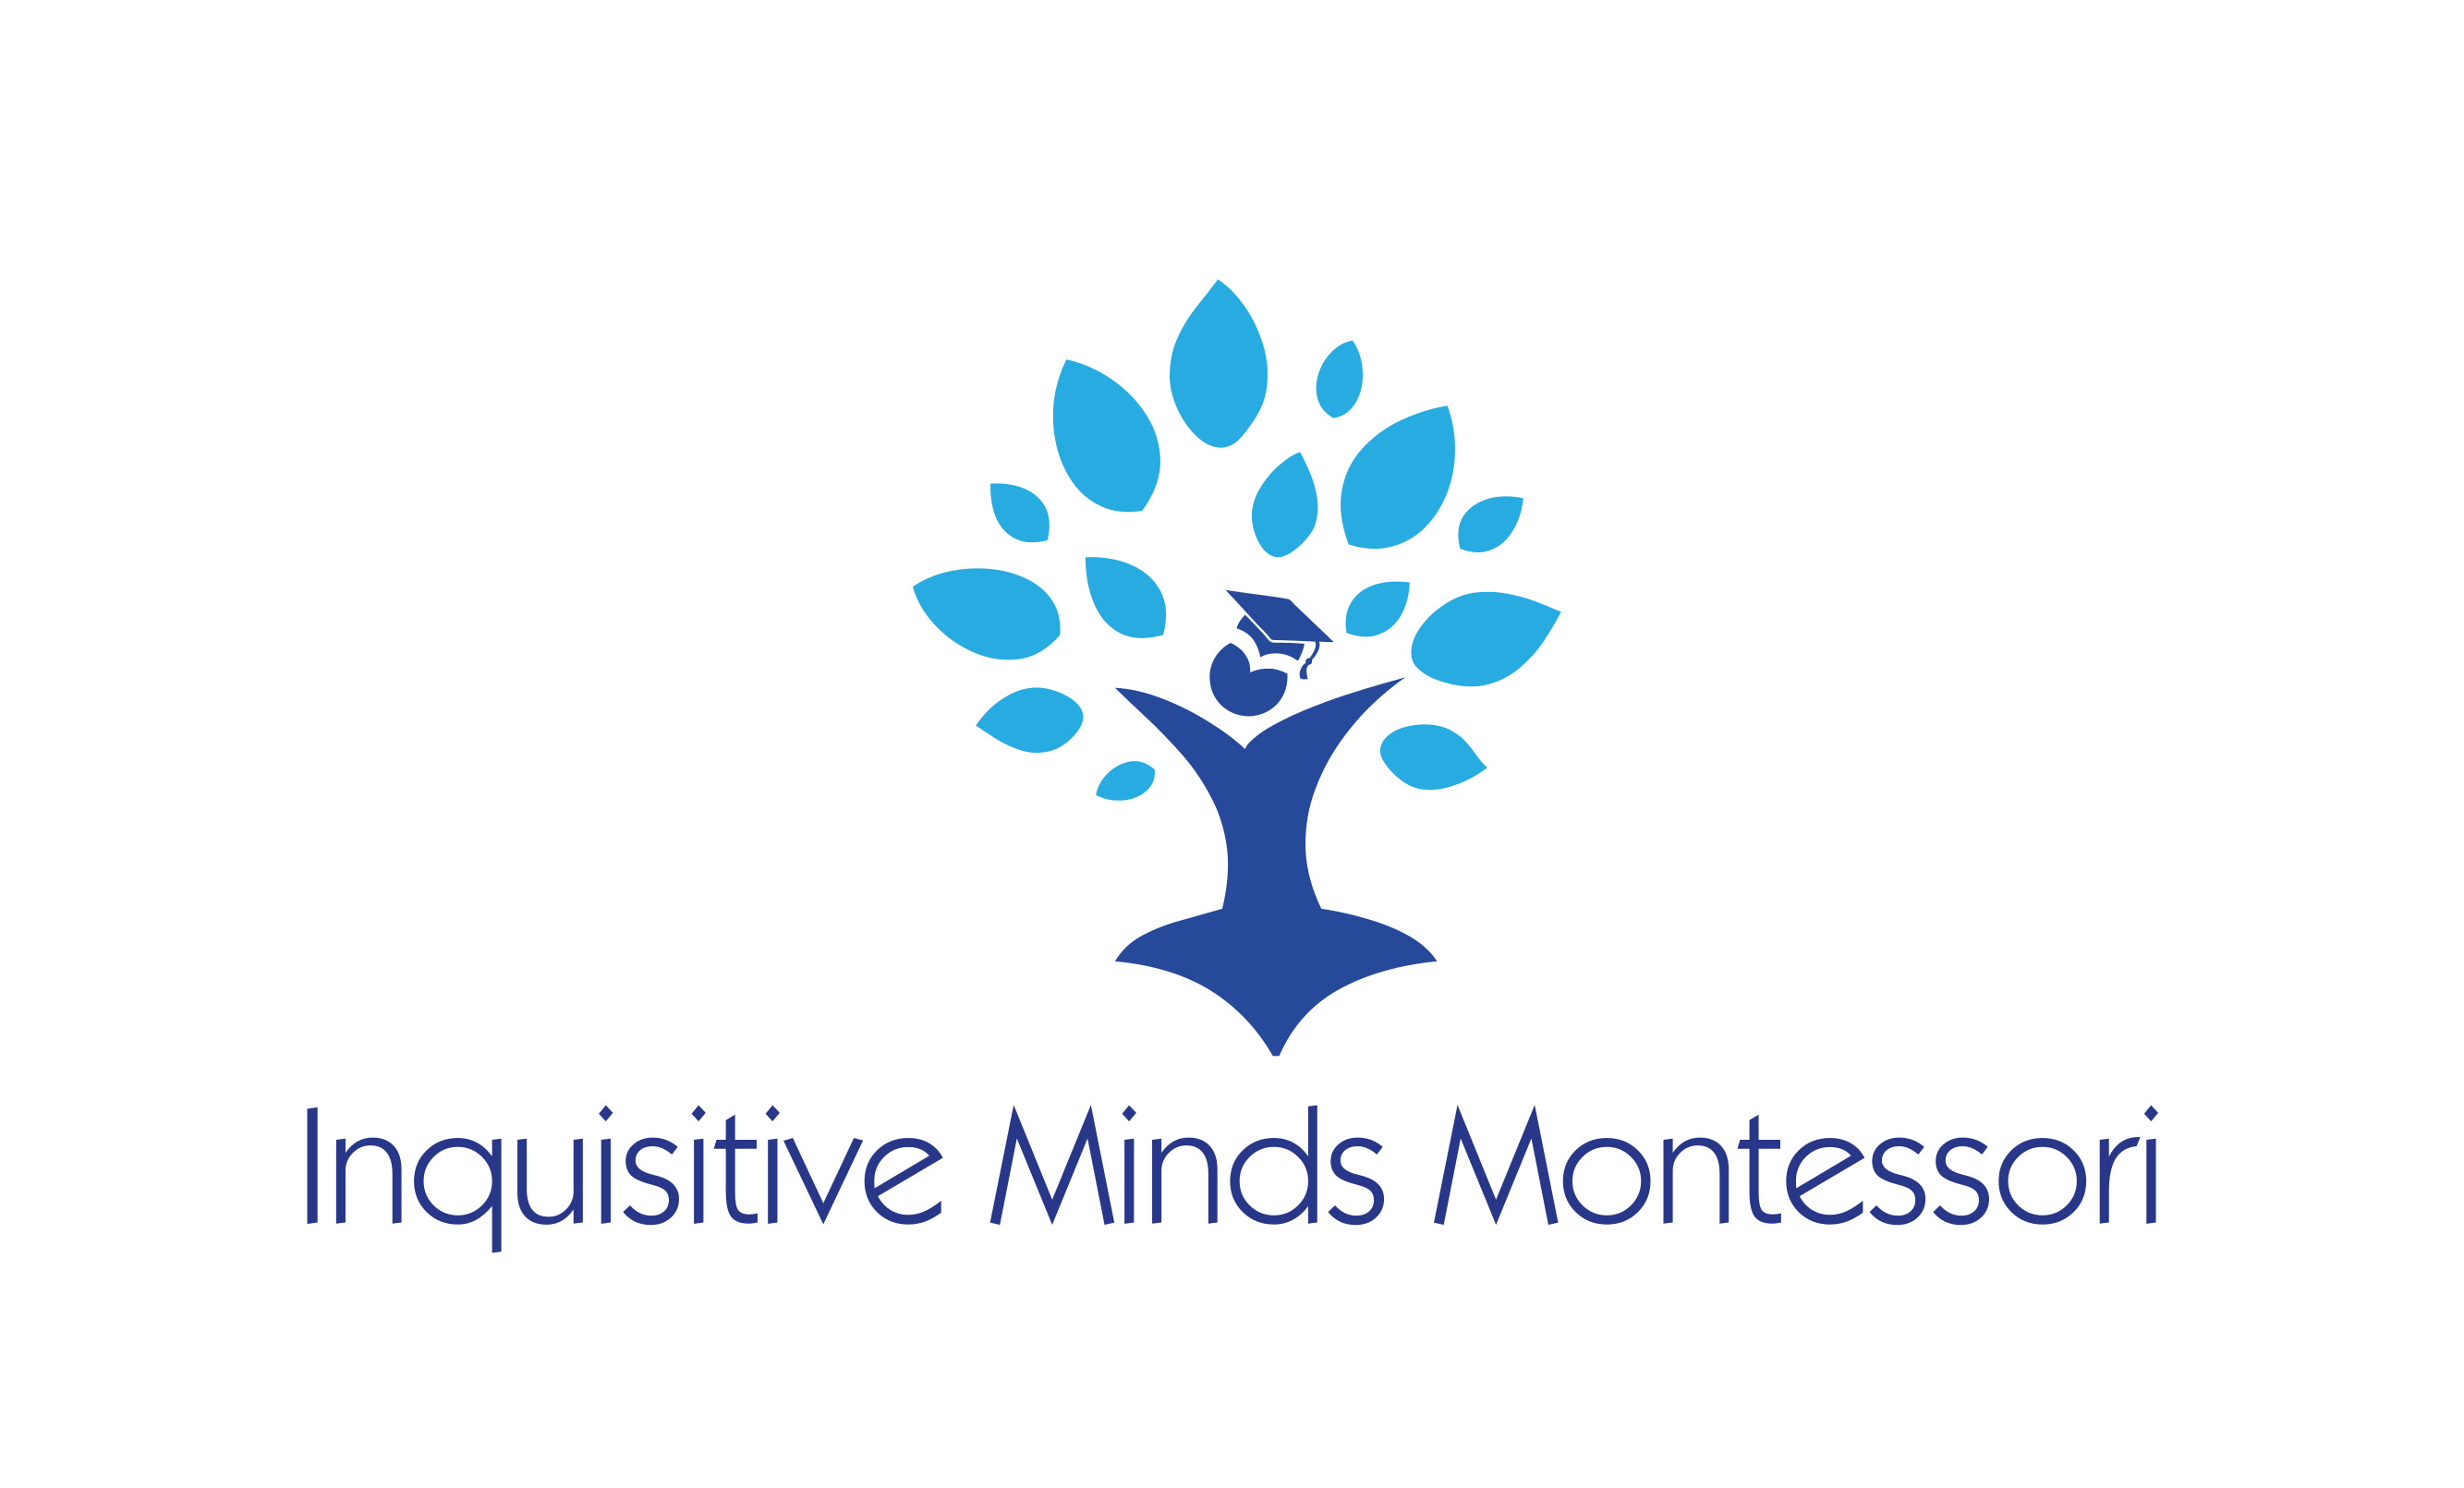 Inquisitive Minds Montessori